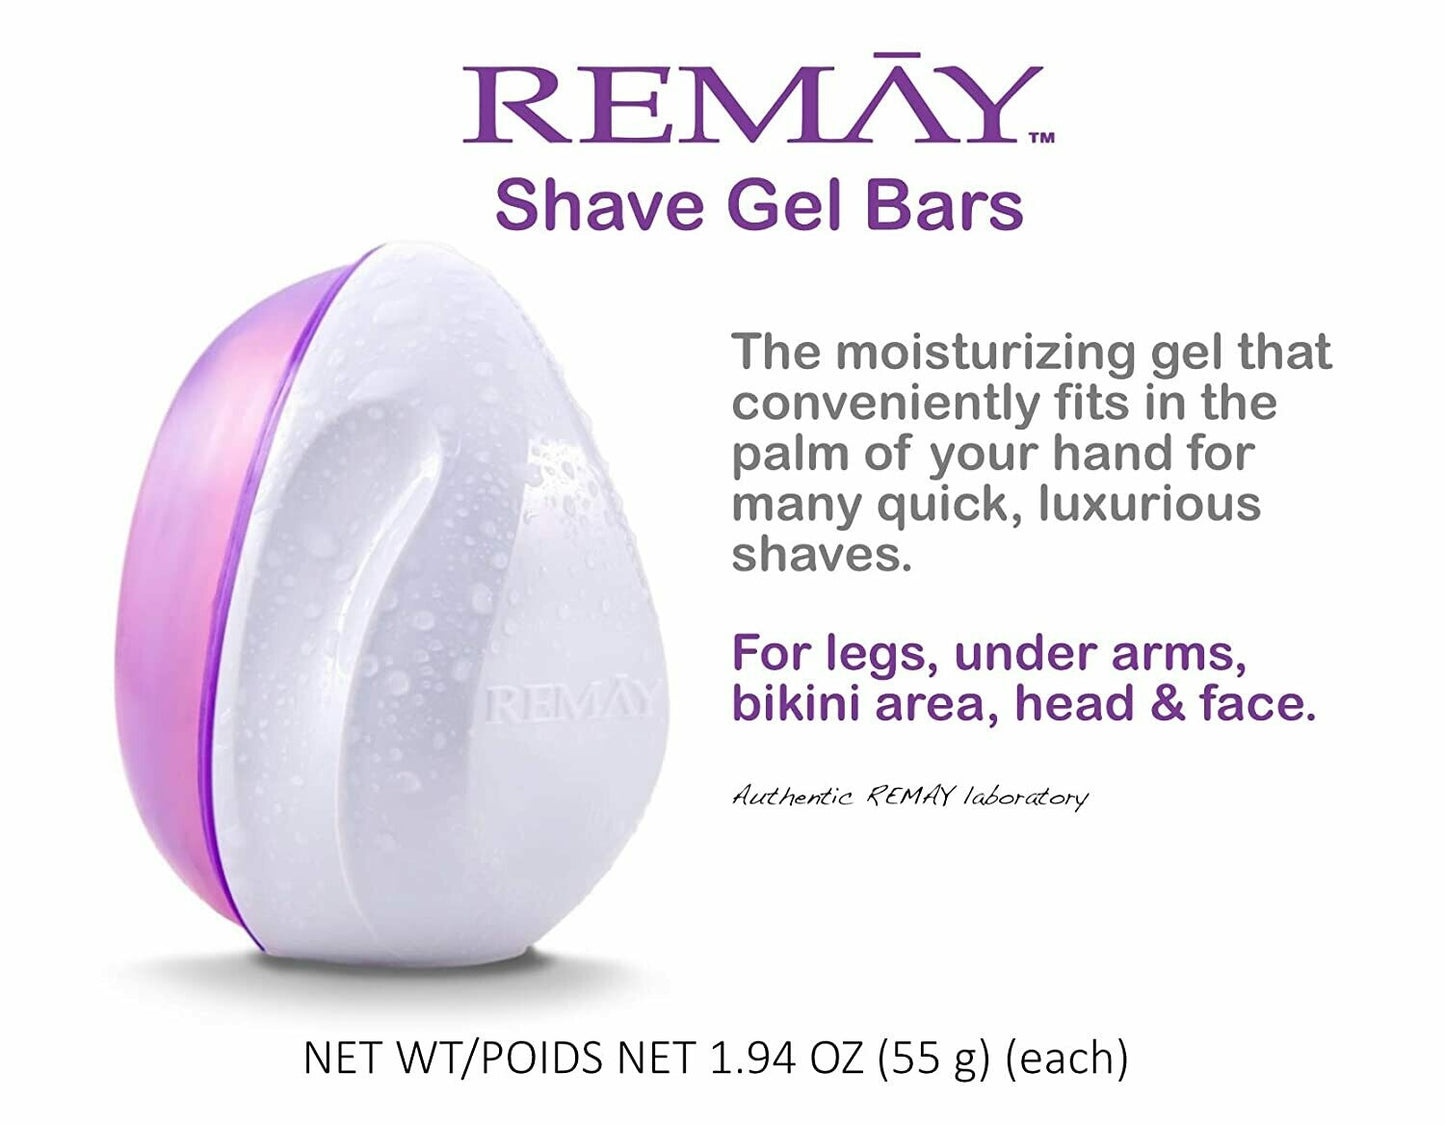 REMAY Glide Shave | Shave Gel Bar (4 PACK)